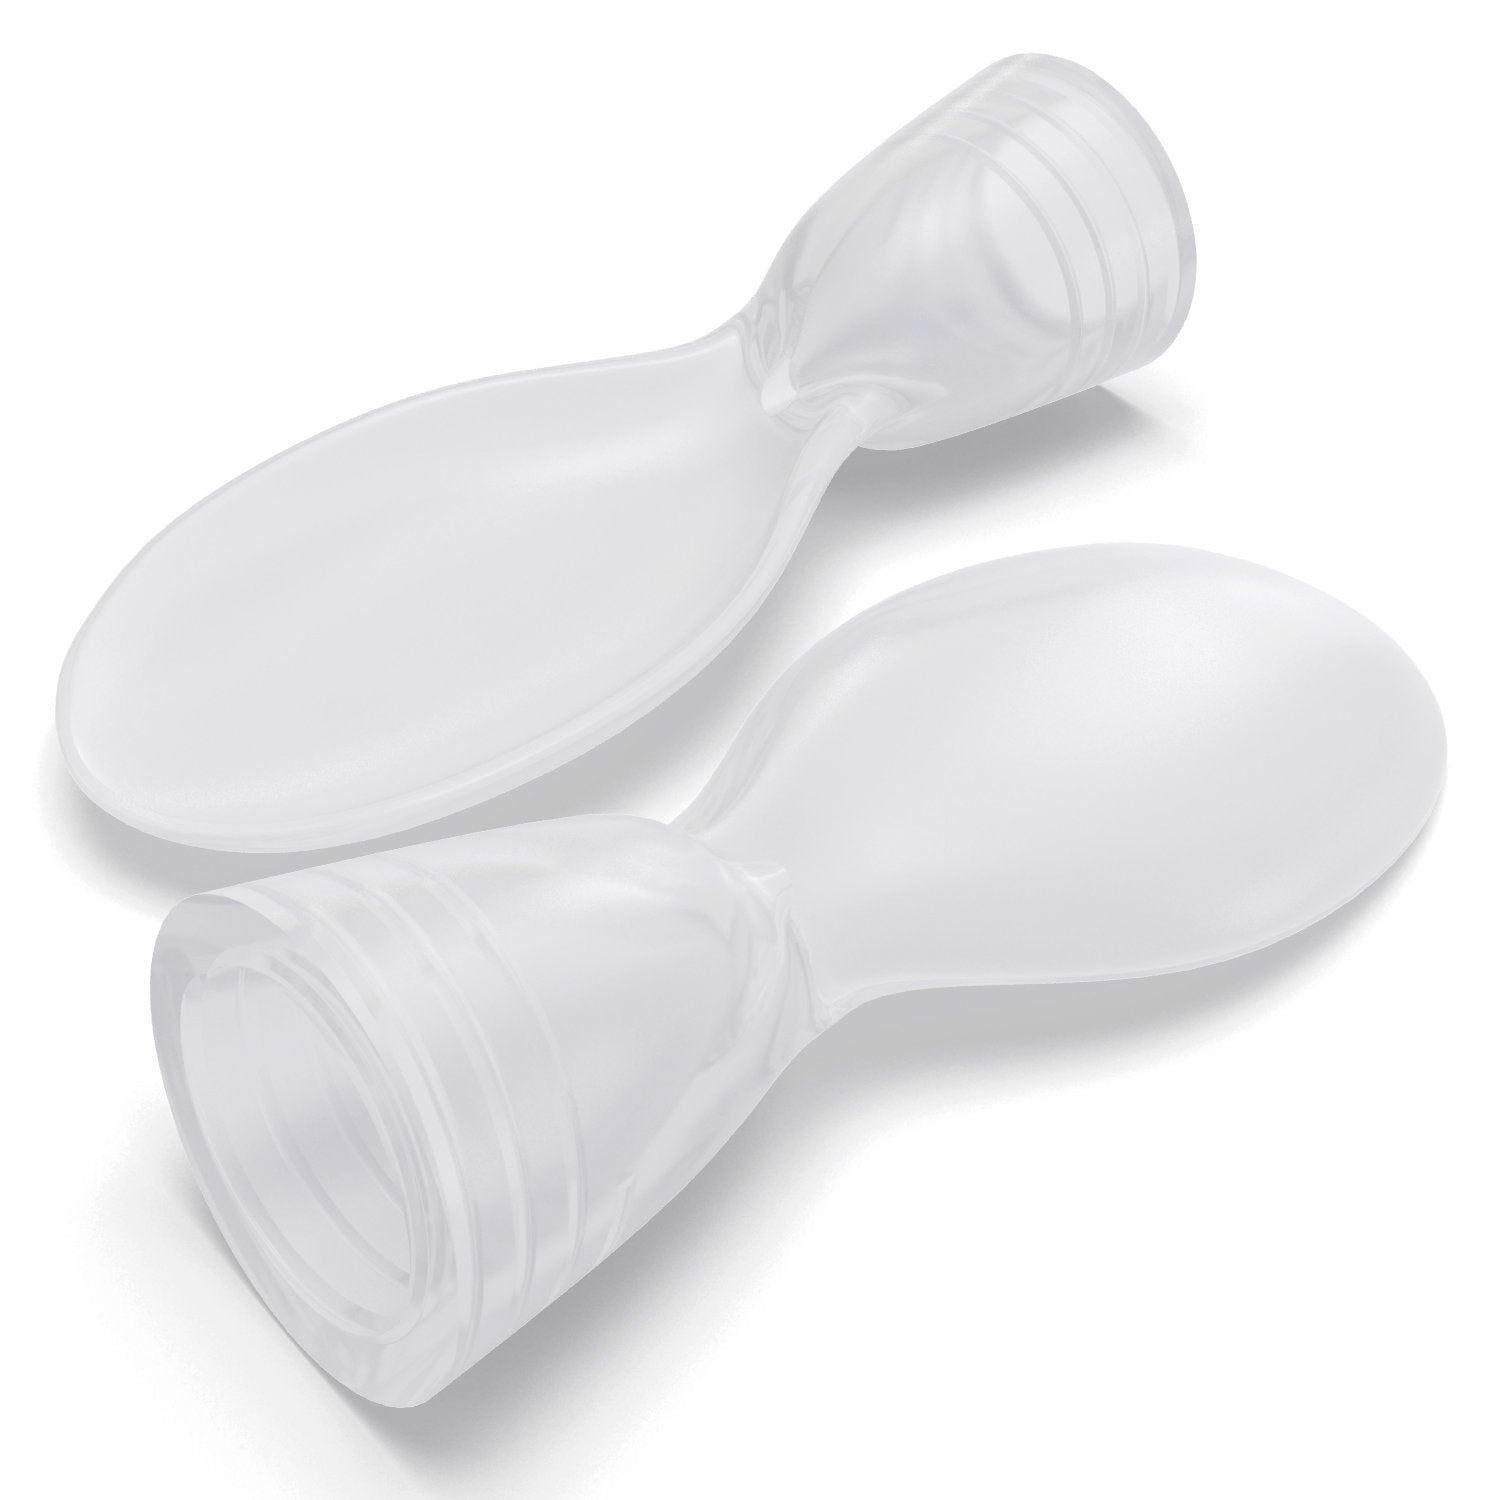 Colher de bébe squeeze (1 unidade) // Squeeze baby spoon (1 unit)